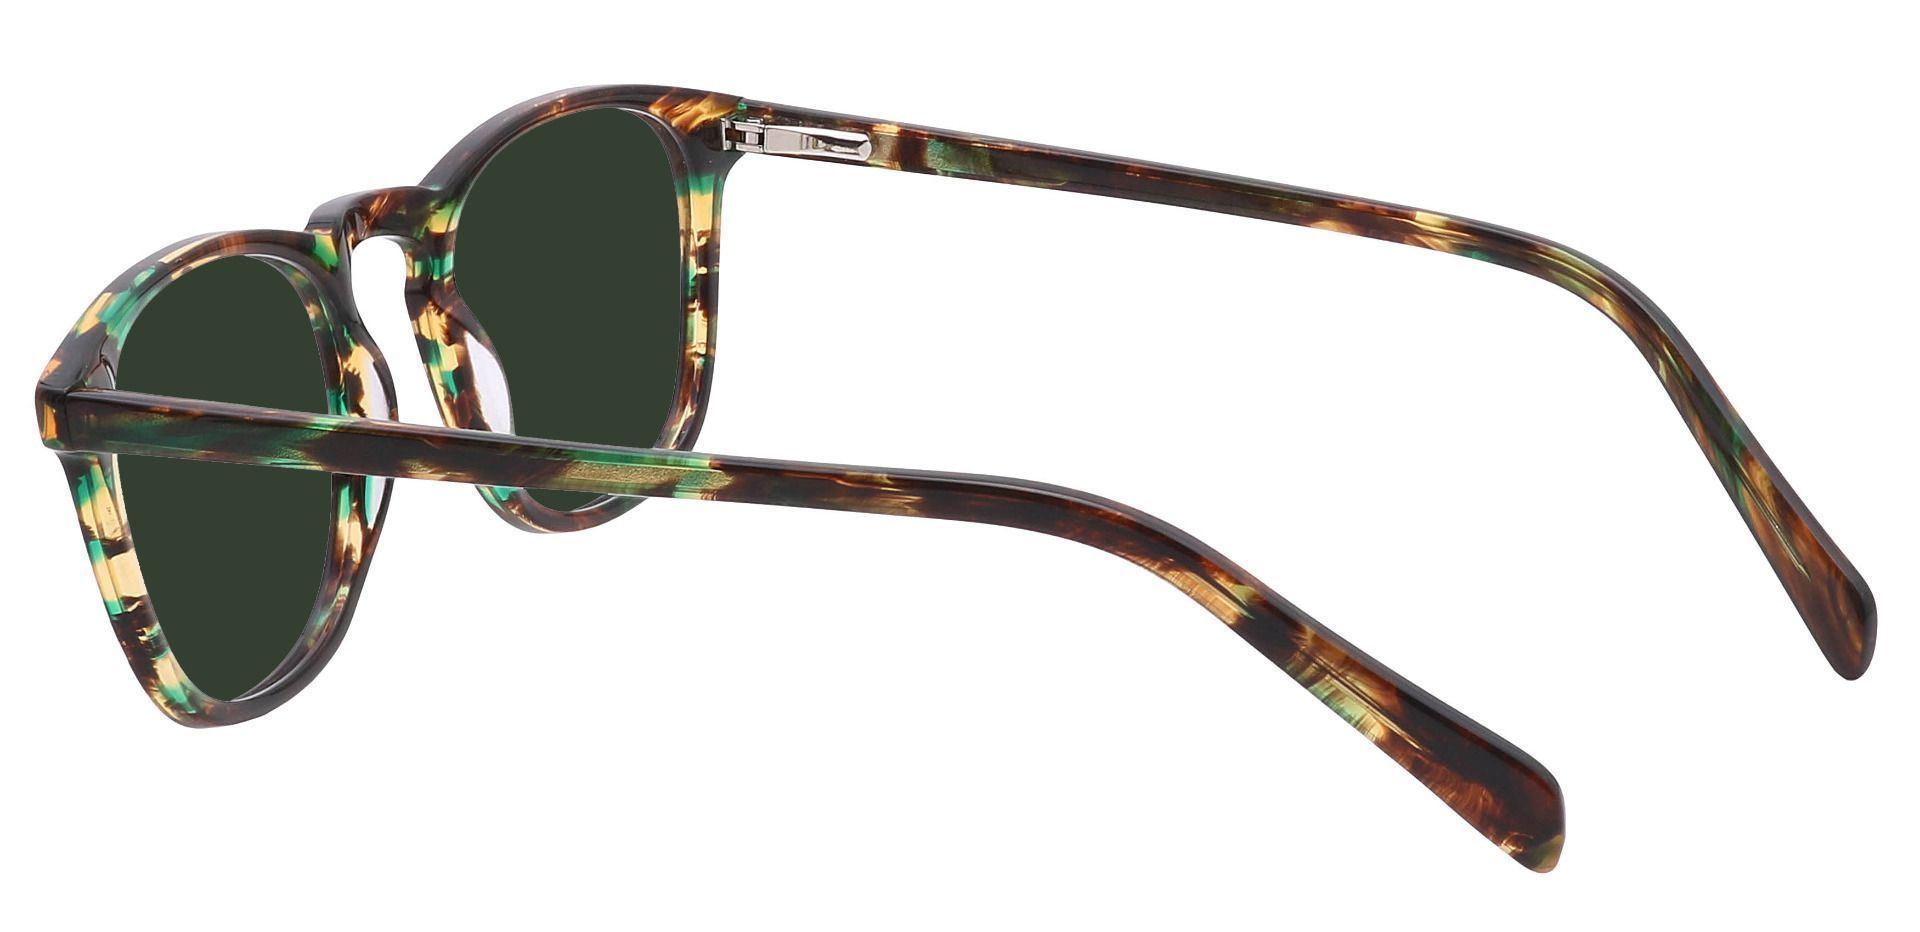 Venti Square Progressive Sunglasses - Green Frame With Green Lenses